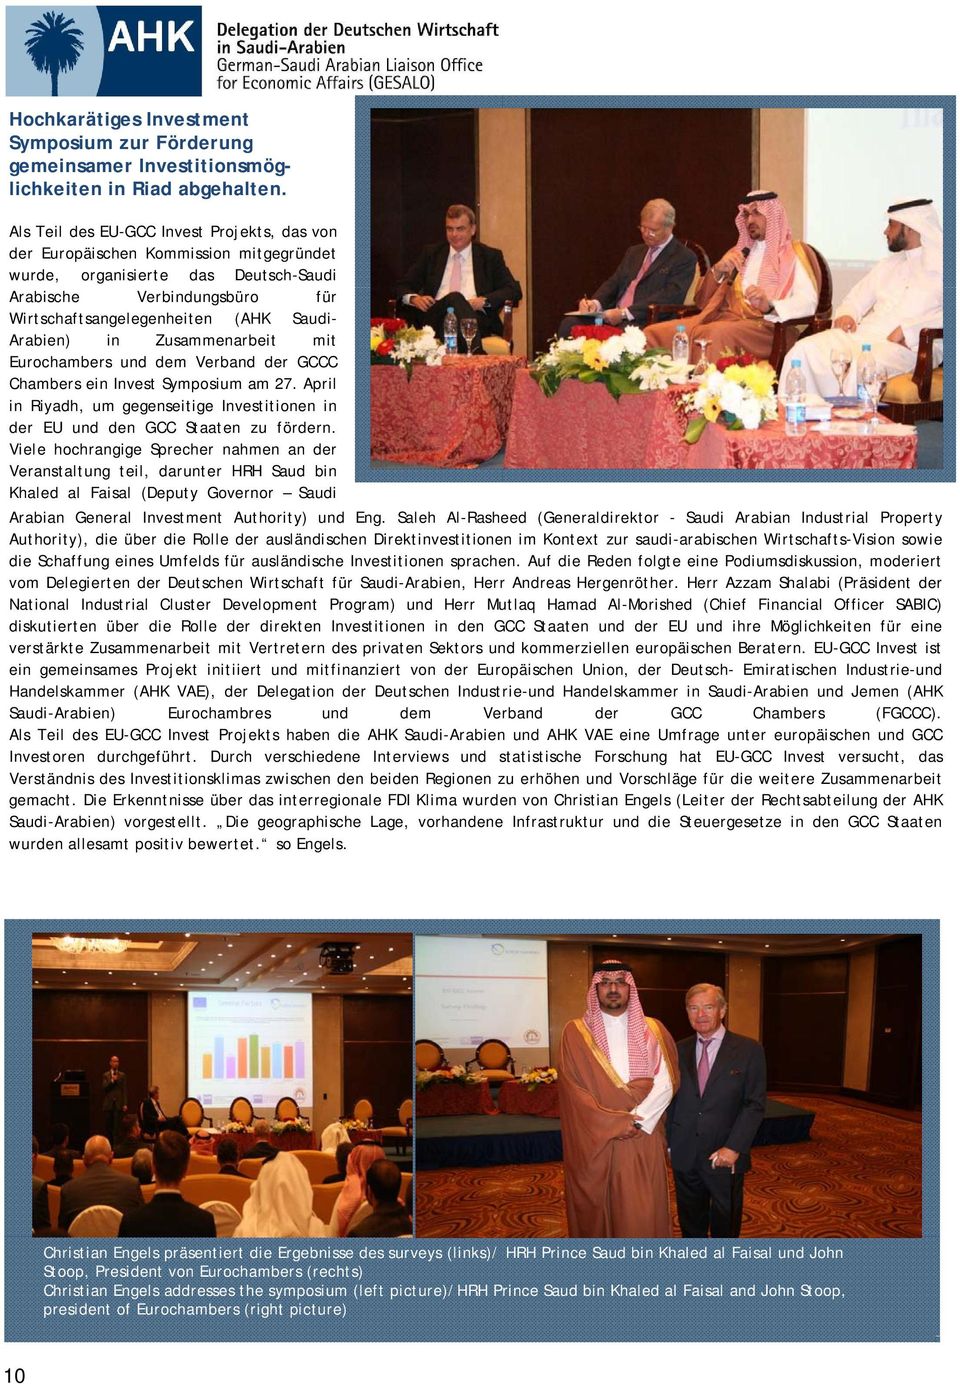 Arabien) in Zusammenarbeit mit Eurochambers und dem Verband der GCCC Chambers ein Invest Symposium am 27. April in Riyadh, um gegenseitige Investitionen in der EU und den GCC Staaten zu fördern.